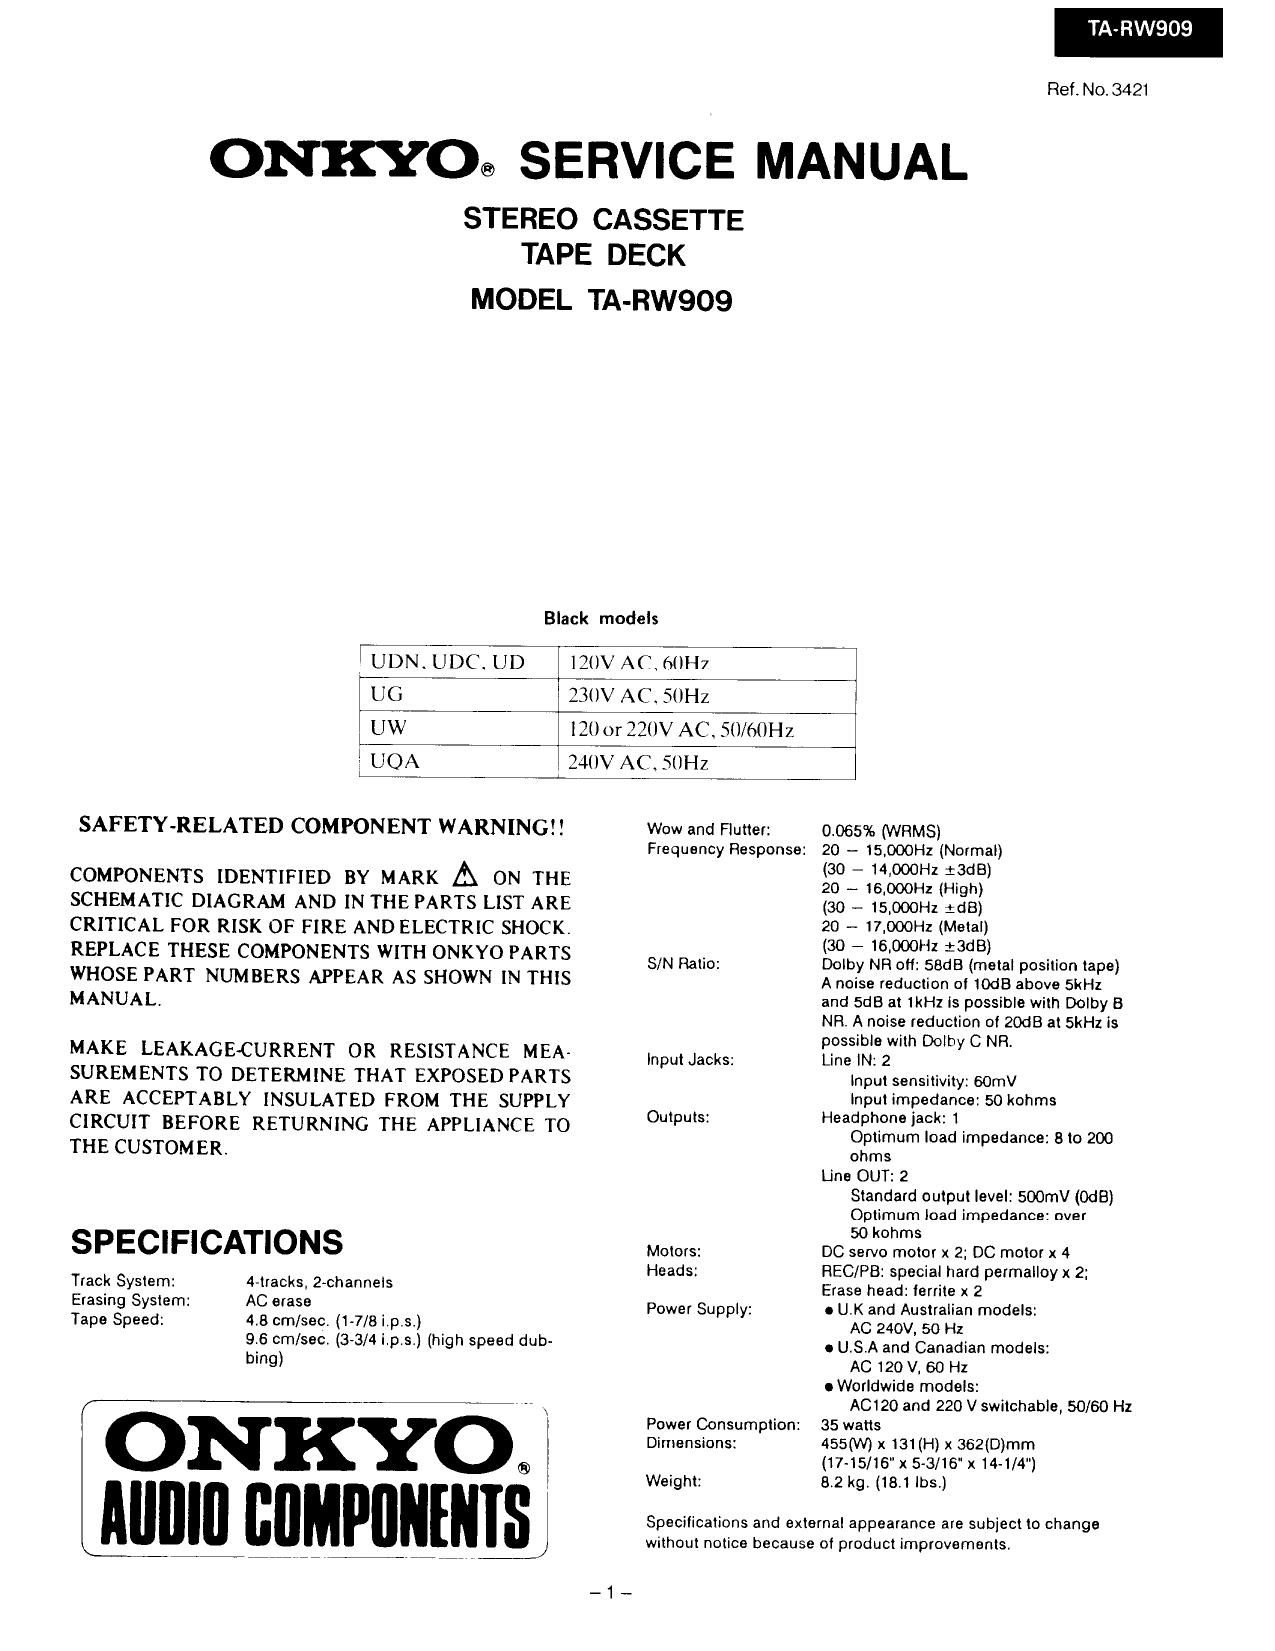 Onkyo TARW 909 Service Manual